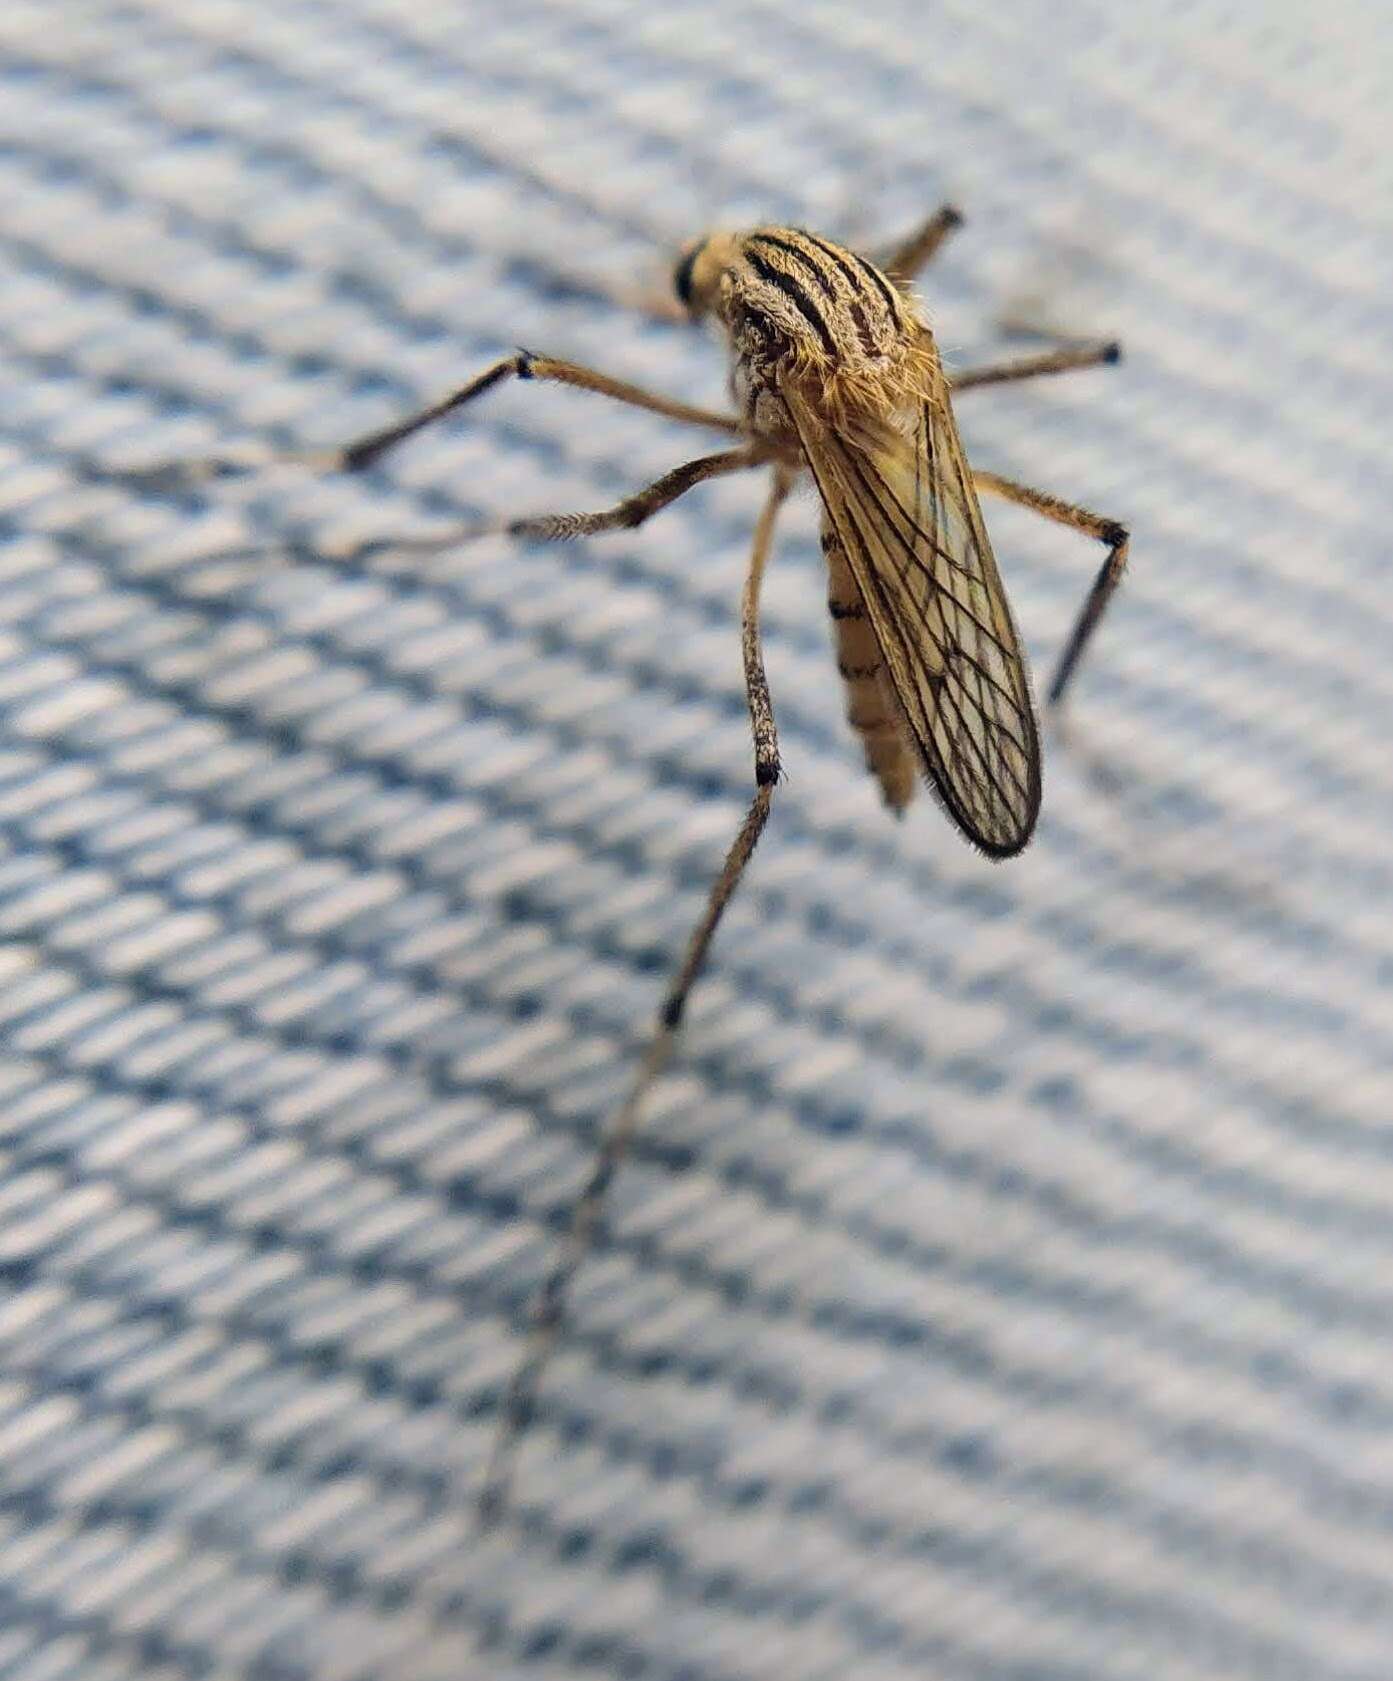 Sivun Aedes vittiger (Skuse 1889) kuva